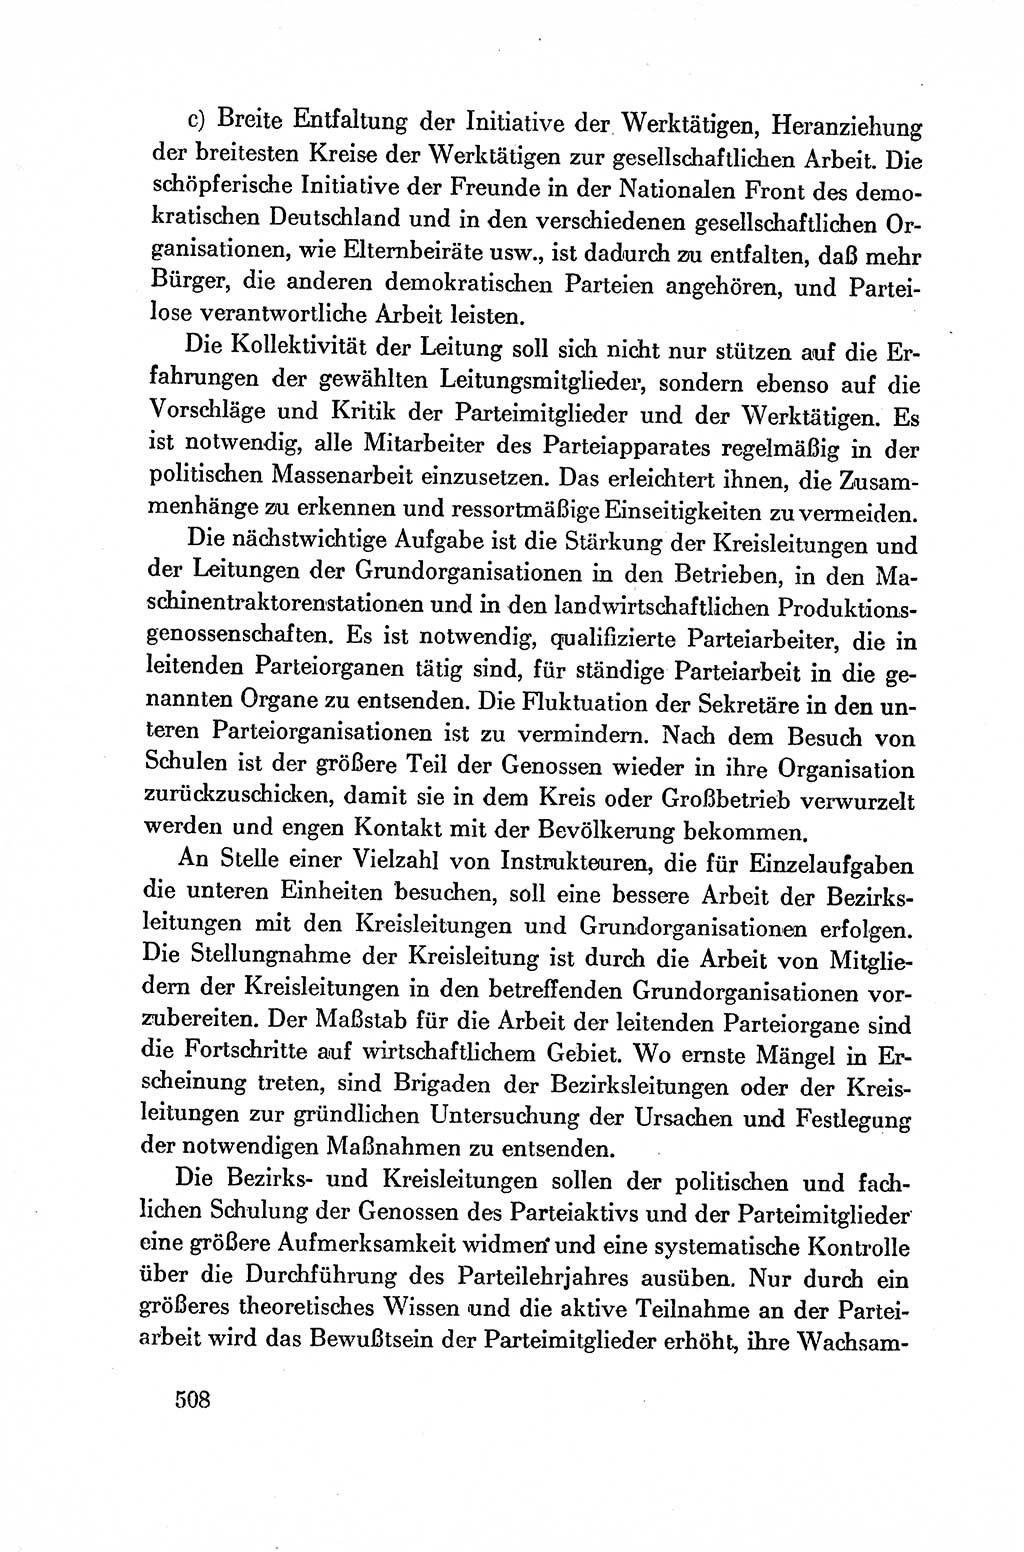 Dokumente der Sozialistischen Einheitspartei Deutschlands (SED) [Deutsche Demokratische Republik (DDR)] 1954-1955, Seite 508 (Dok. SED DDR 1954-1955, S. 508)